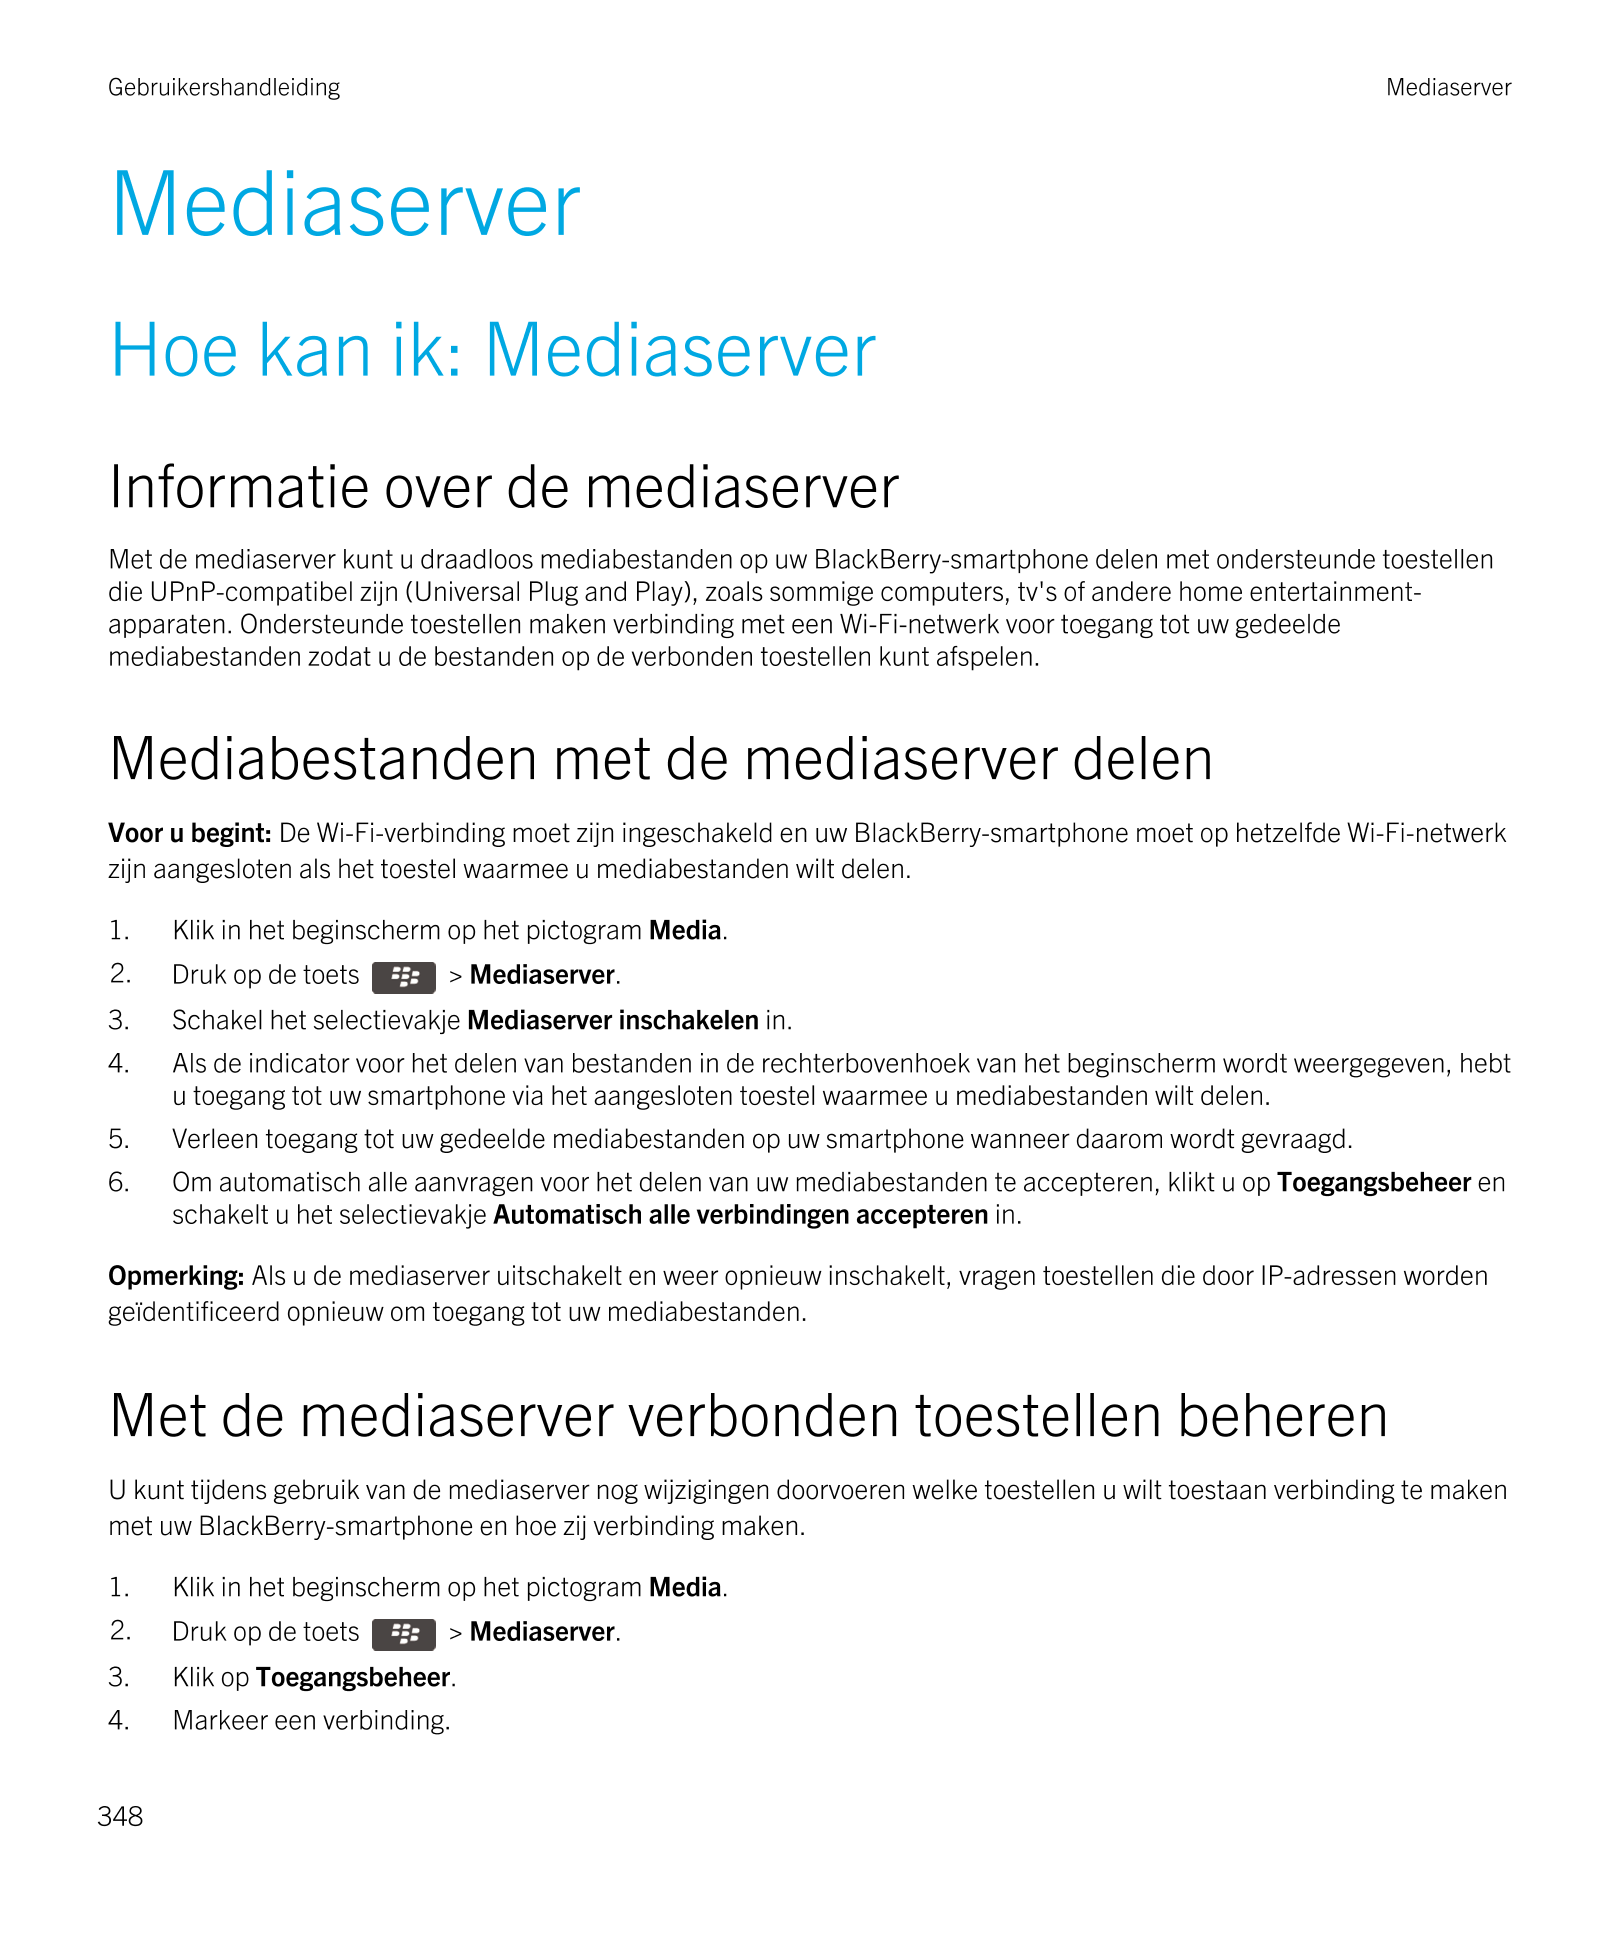 Gebruikershandleiding Mediaserver
Mediaserver
Hoe kan ik: Mediaserver
Informatie over de mediaserver
Met de mediaserver kunt u d